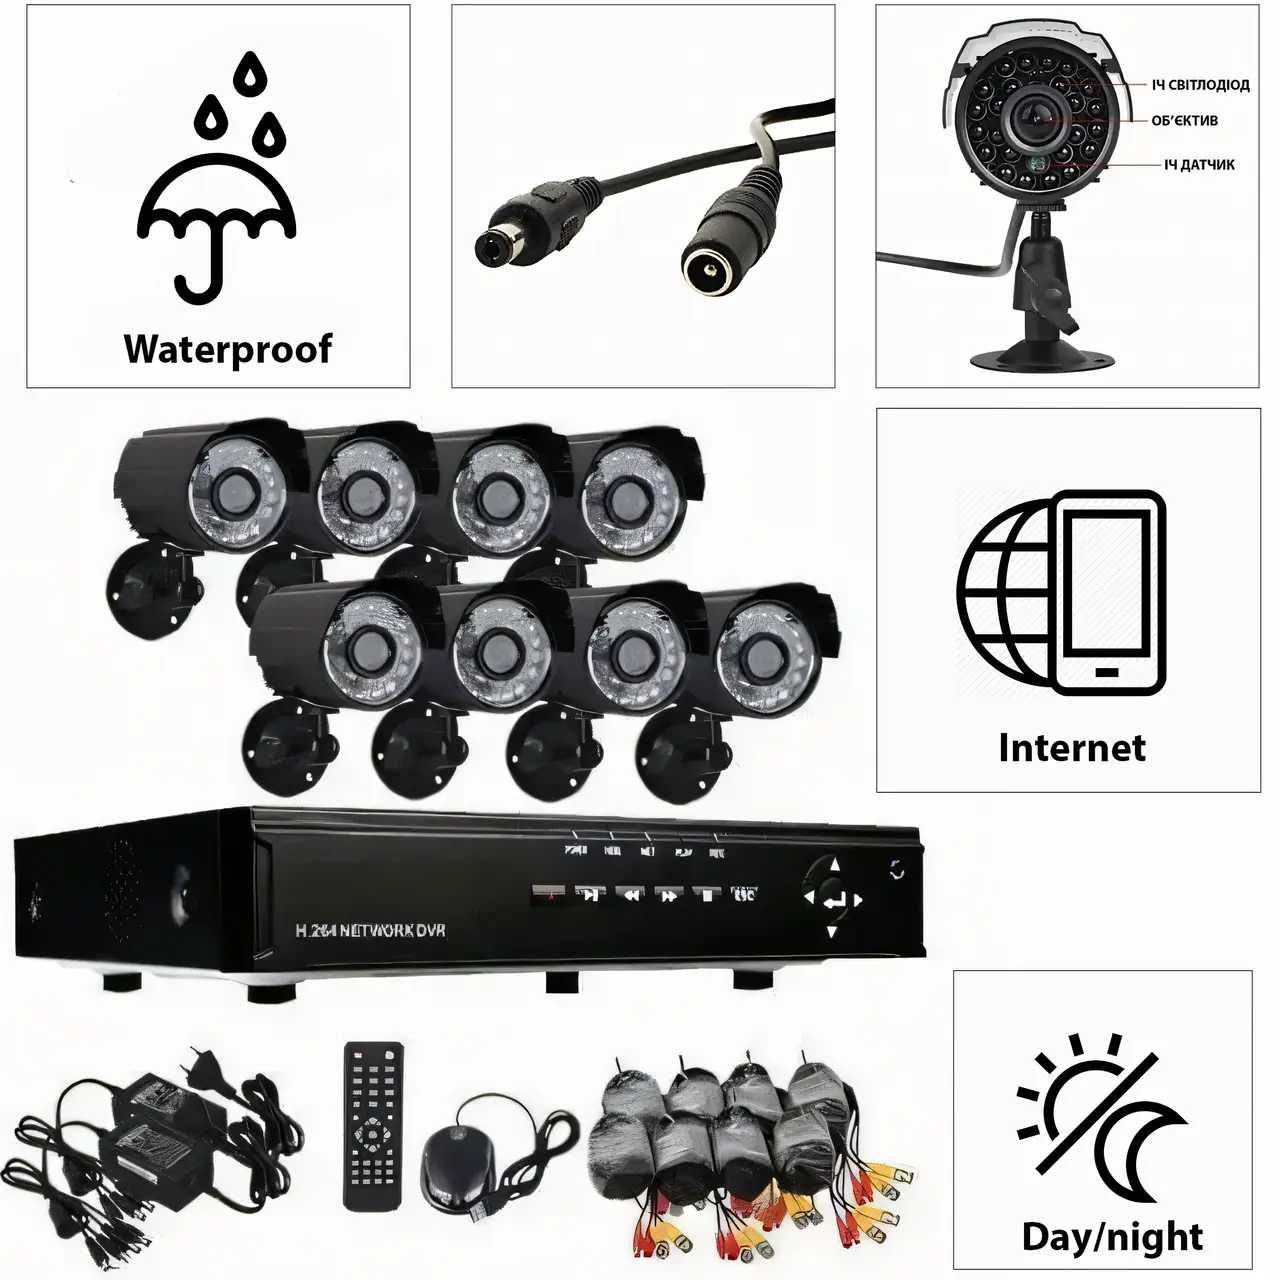 Набор для видеонаблюдения CCTV XVR-TO801N, 8 камер